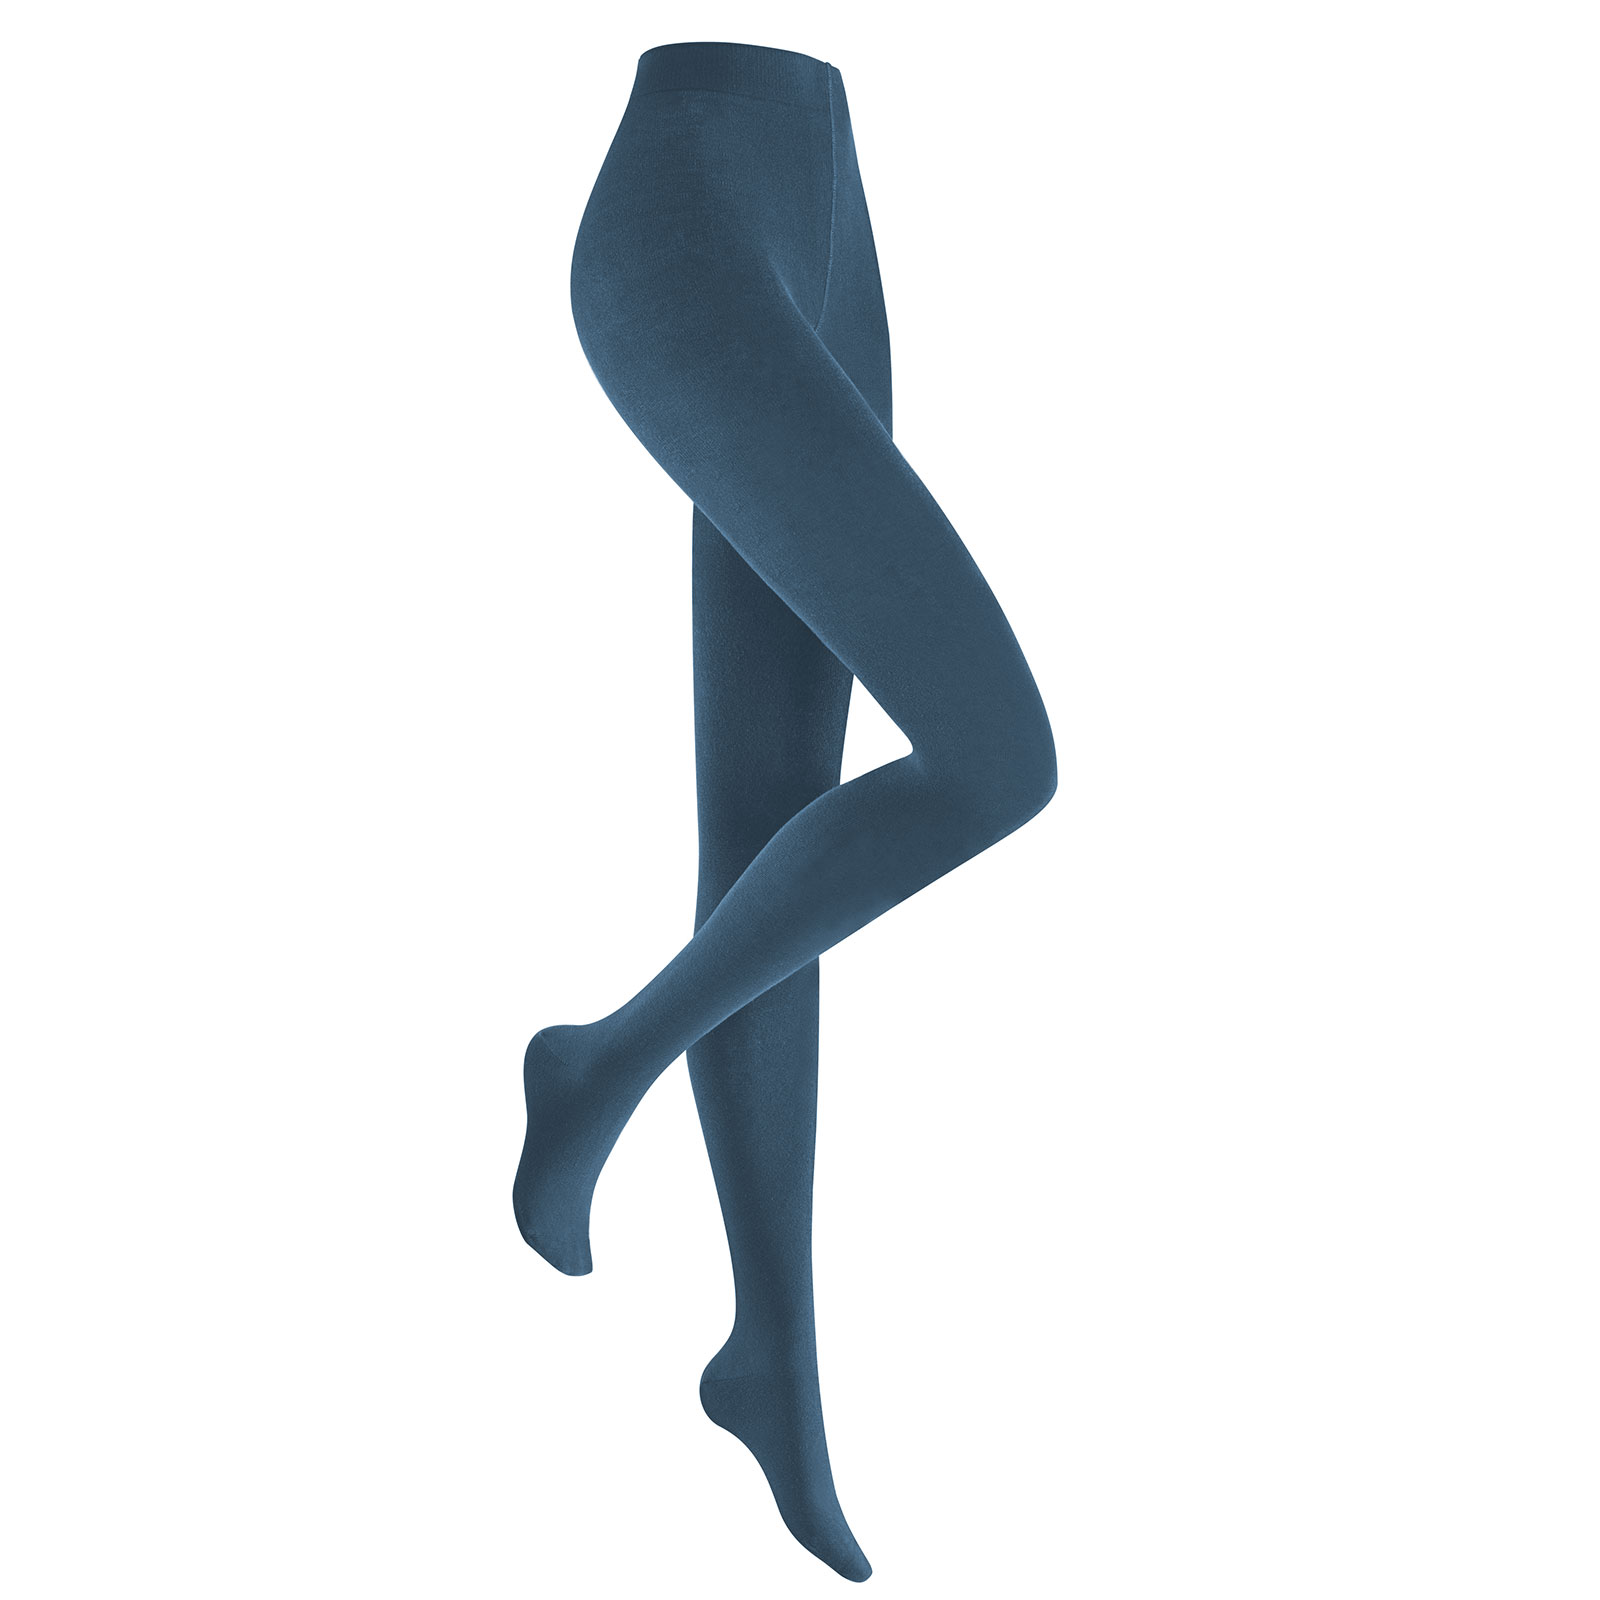 HUDSON Damen RELAX FINE  -  42/44 - Blickdichte Strumpfhose / Strickstrumpfhose mit hohem Baumwollanteil - Blue moon (Blau)